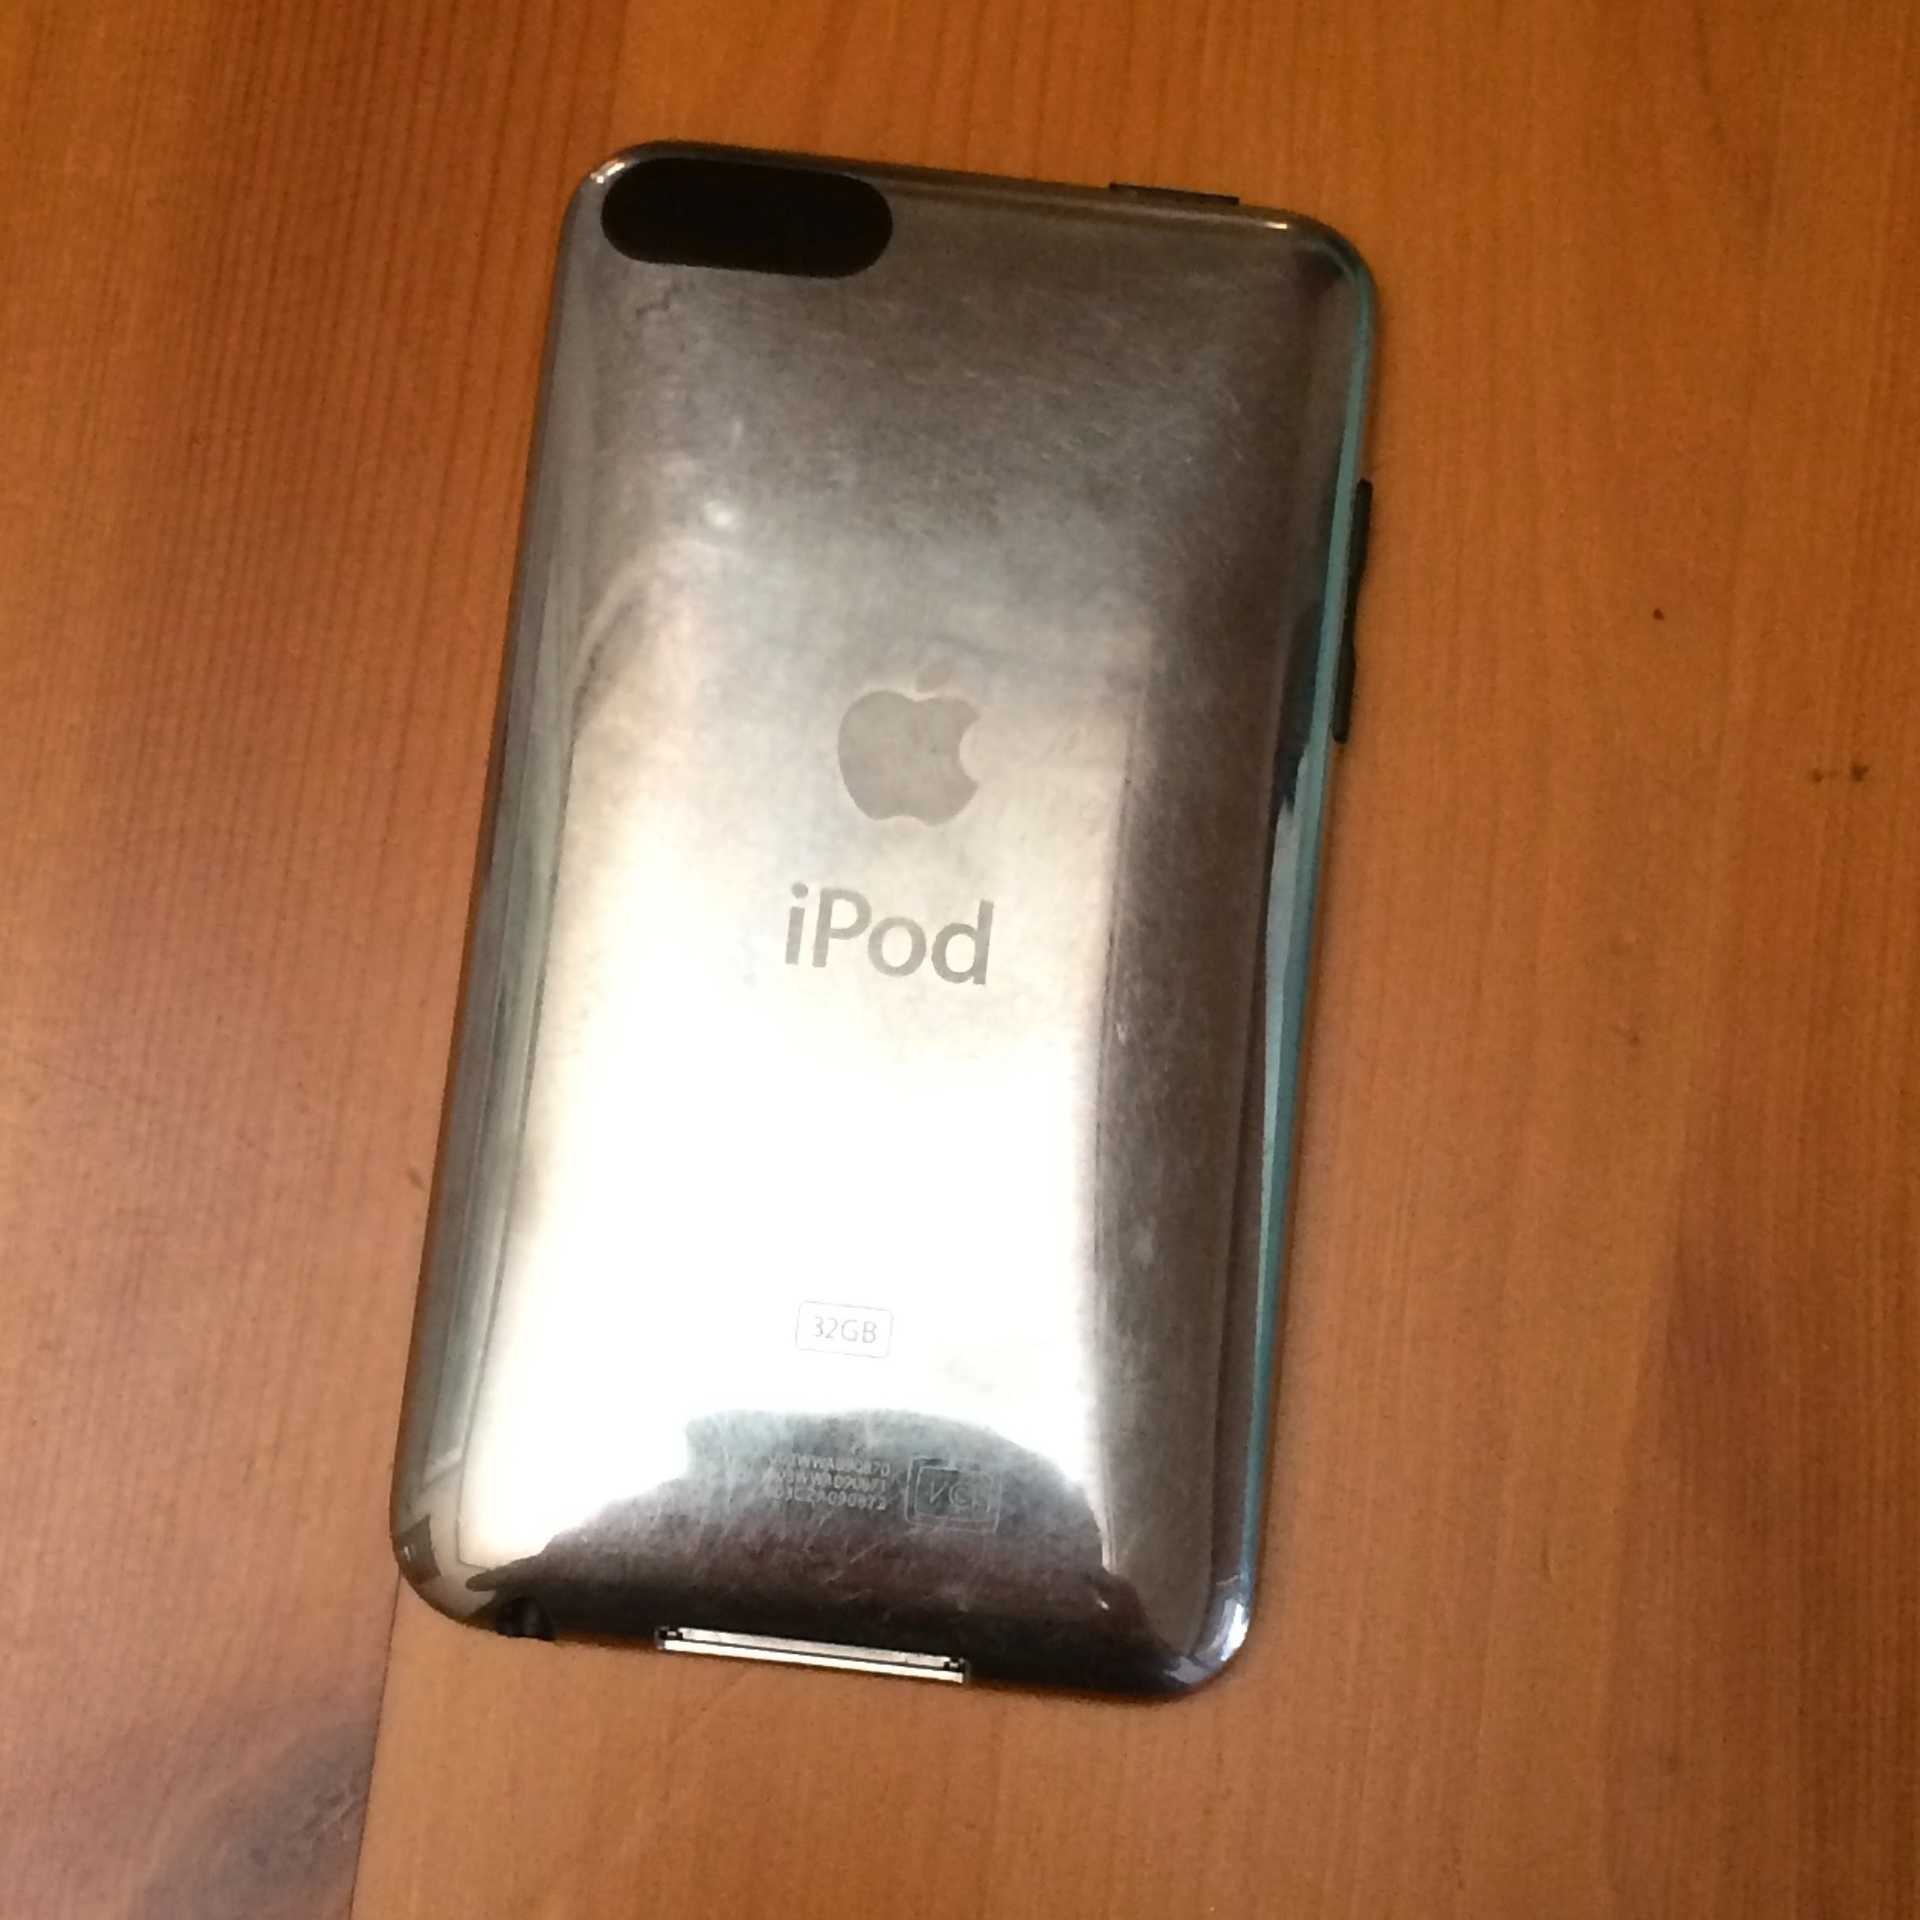 iPod touch が発売された: ogu's blog (かずさ便り-ちょっとだけPCの話も)